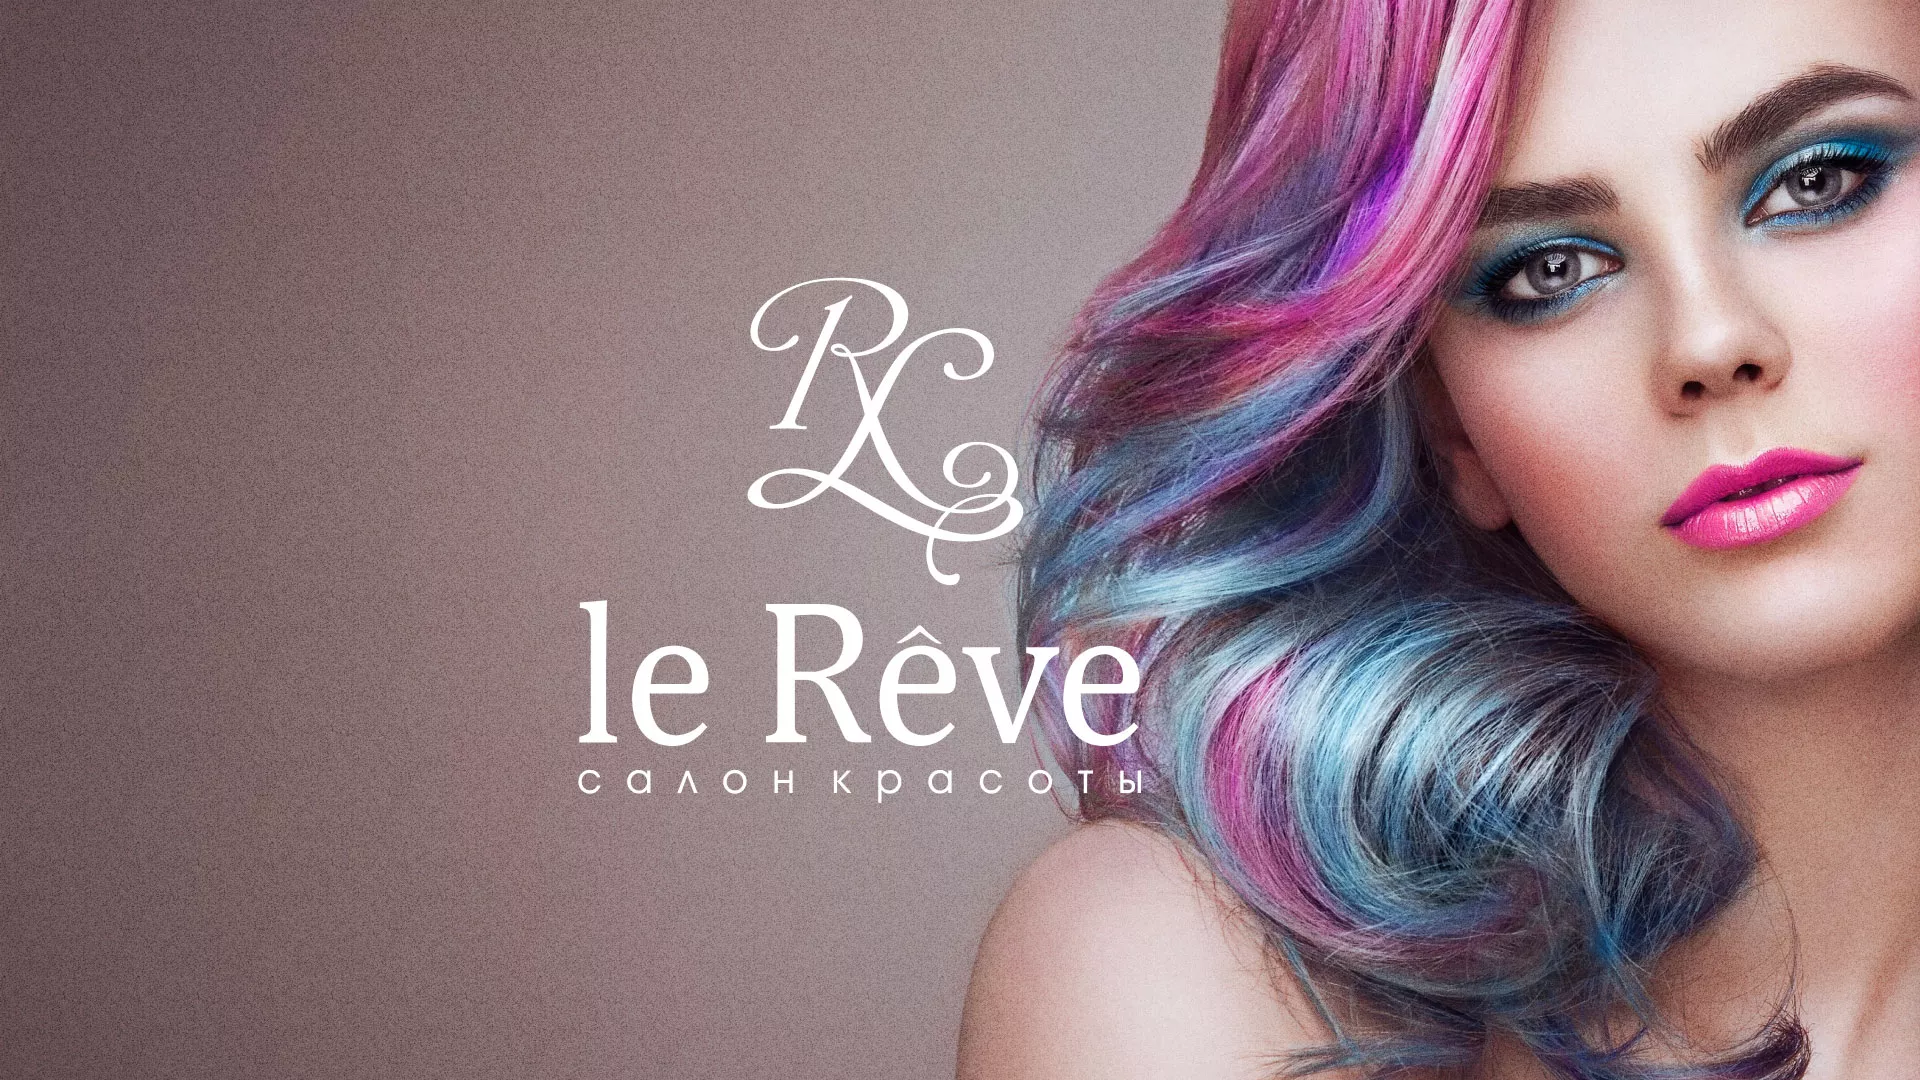 Создание сайта для салона красоты «Le Reve» в Кингисеппе